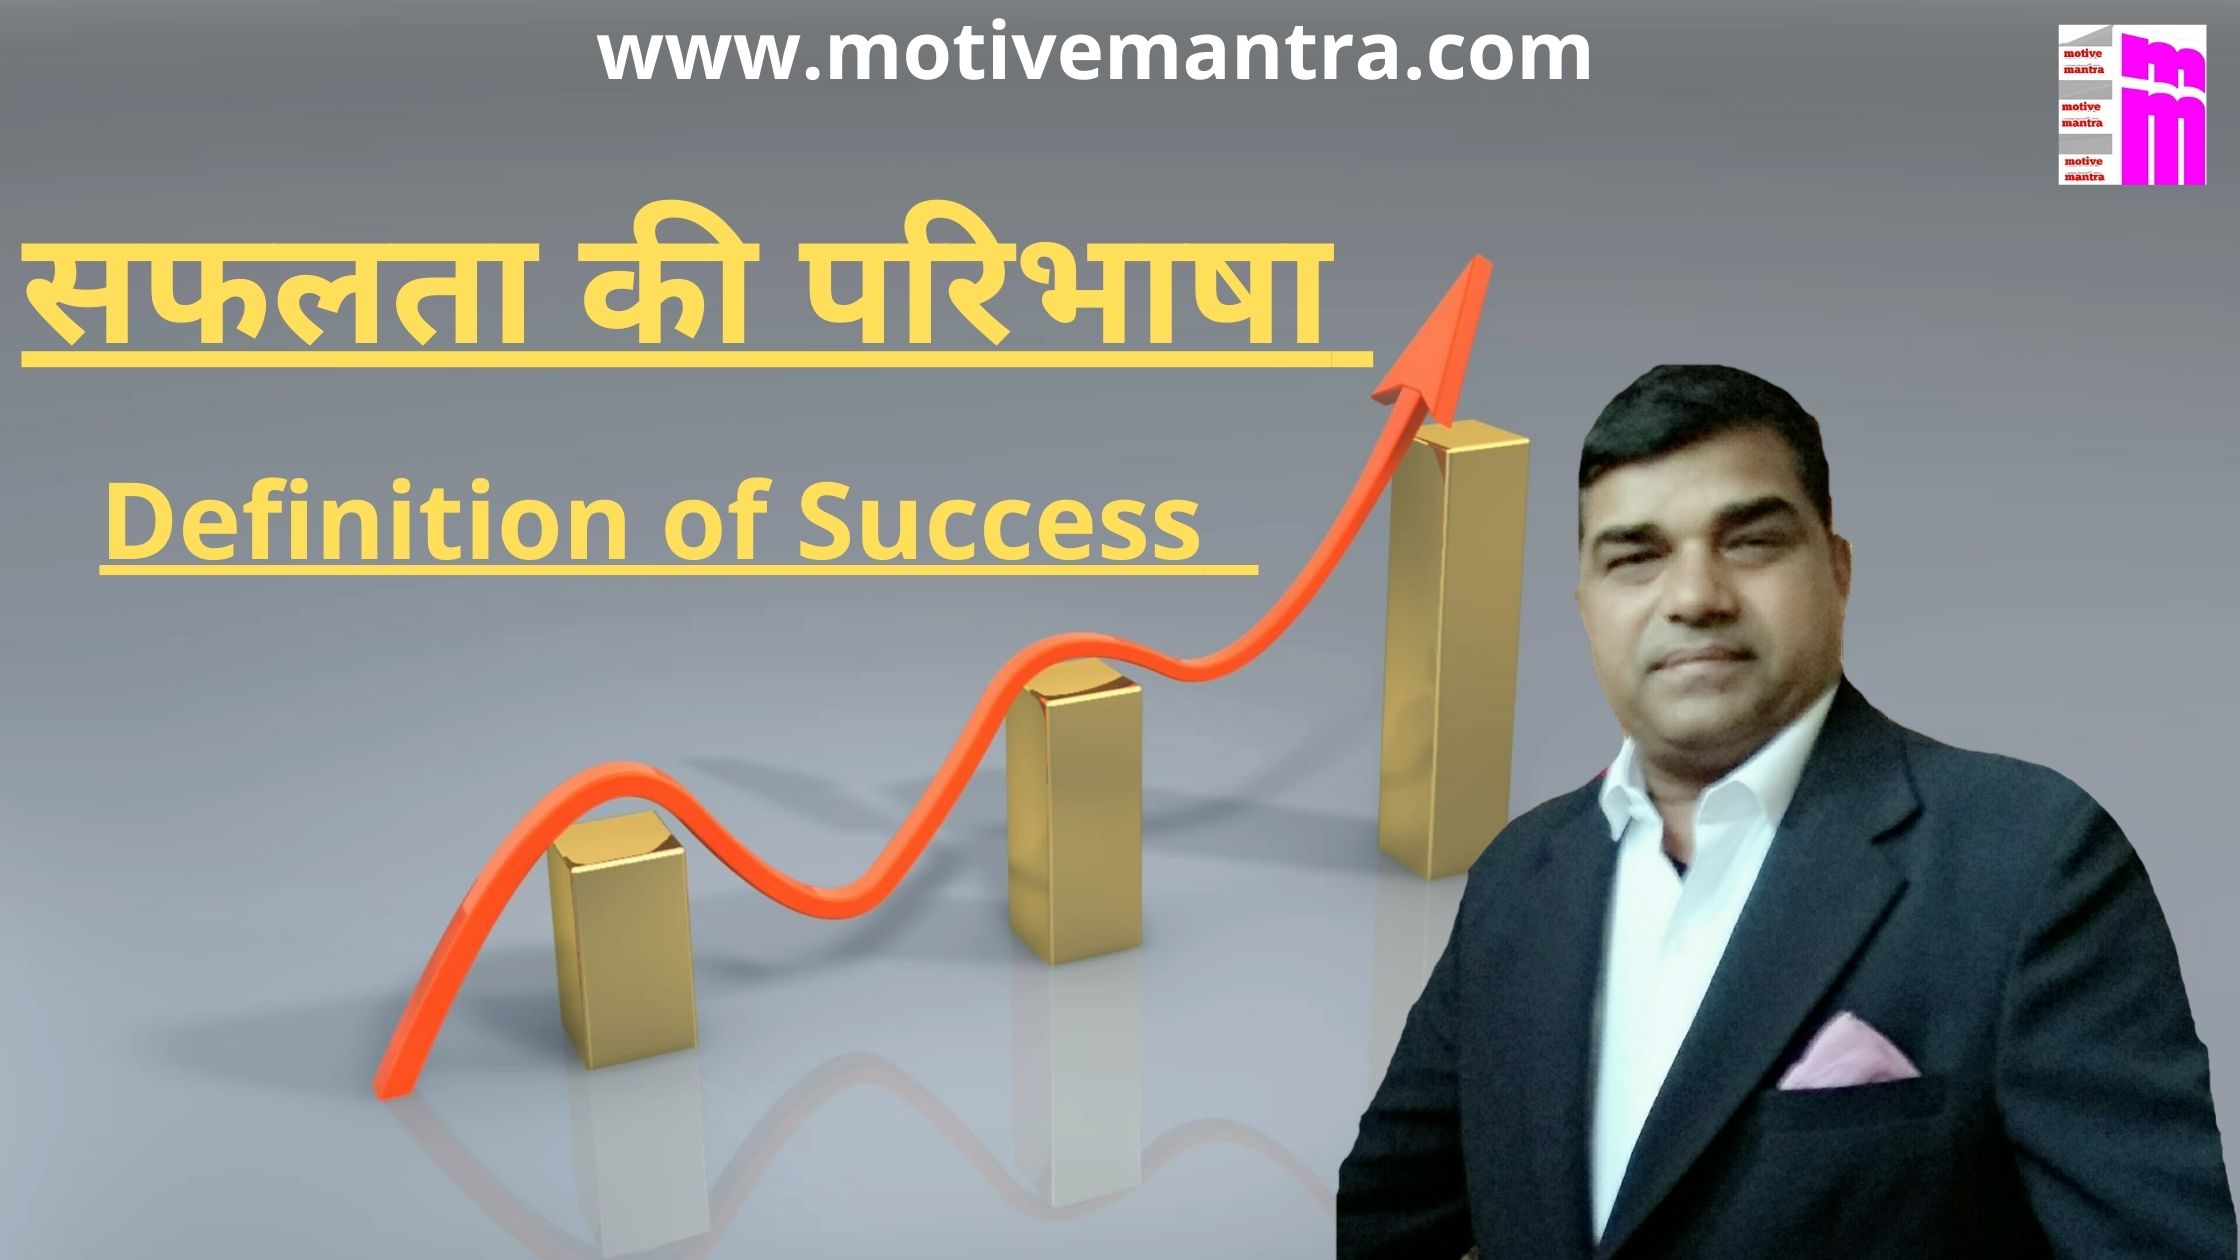 सफलता की परिभाषा | Definition of Success